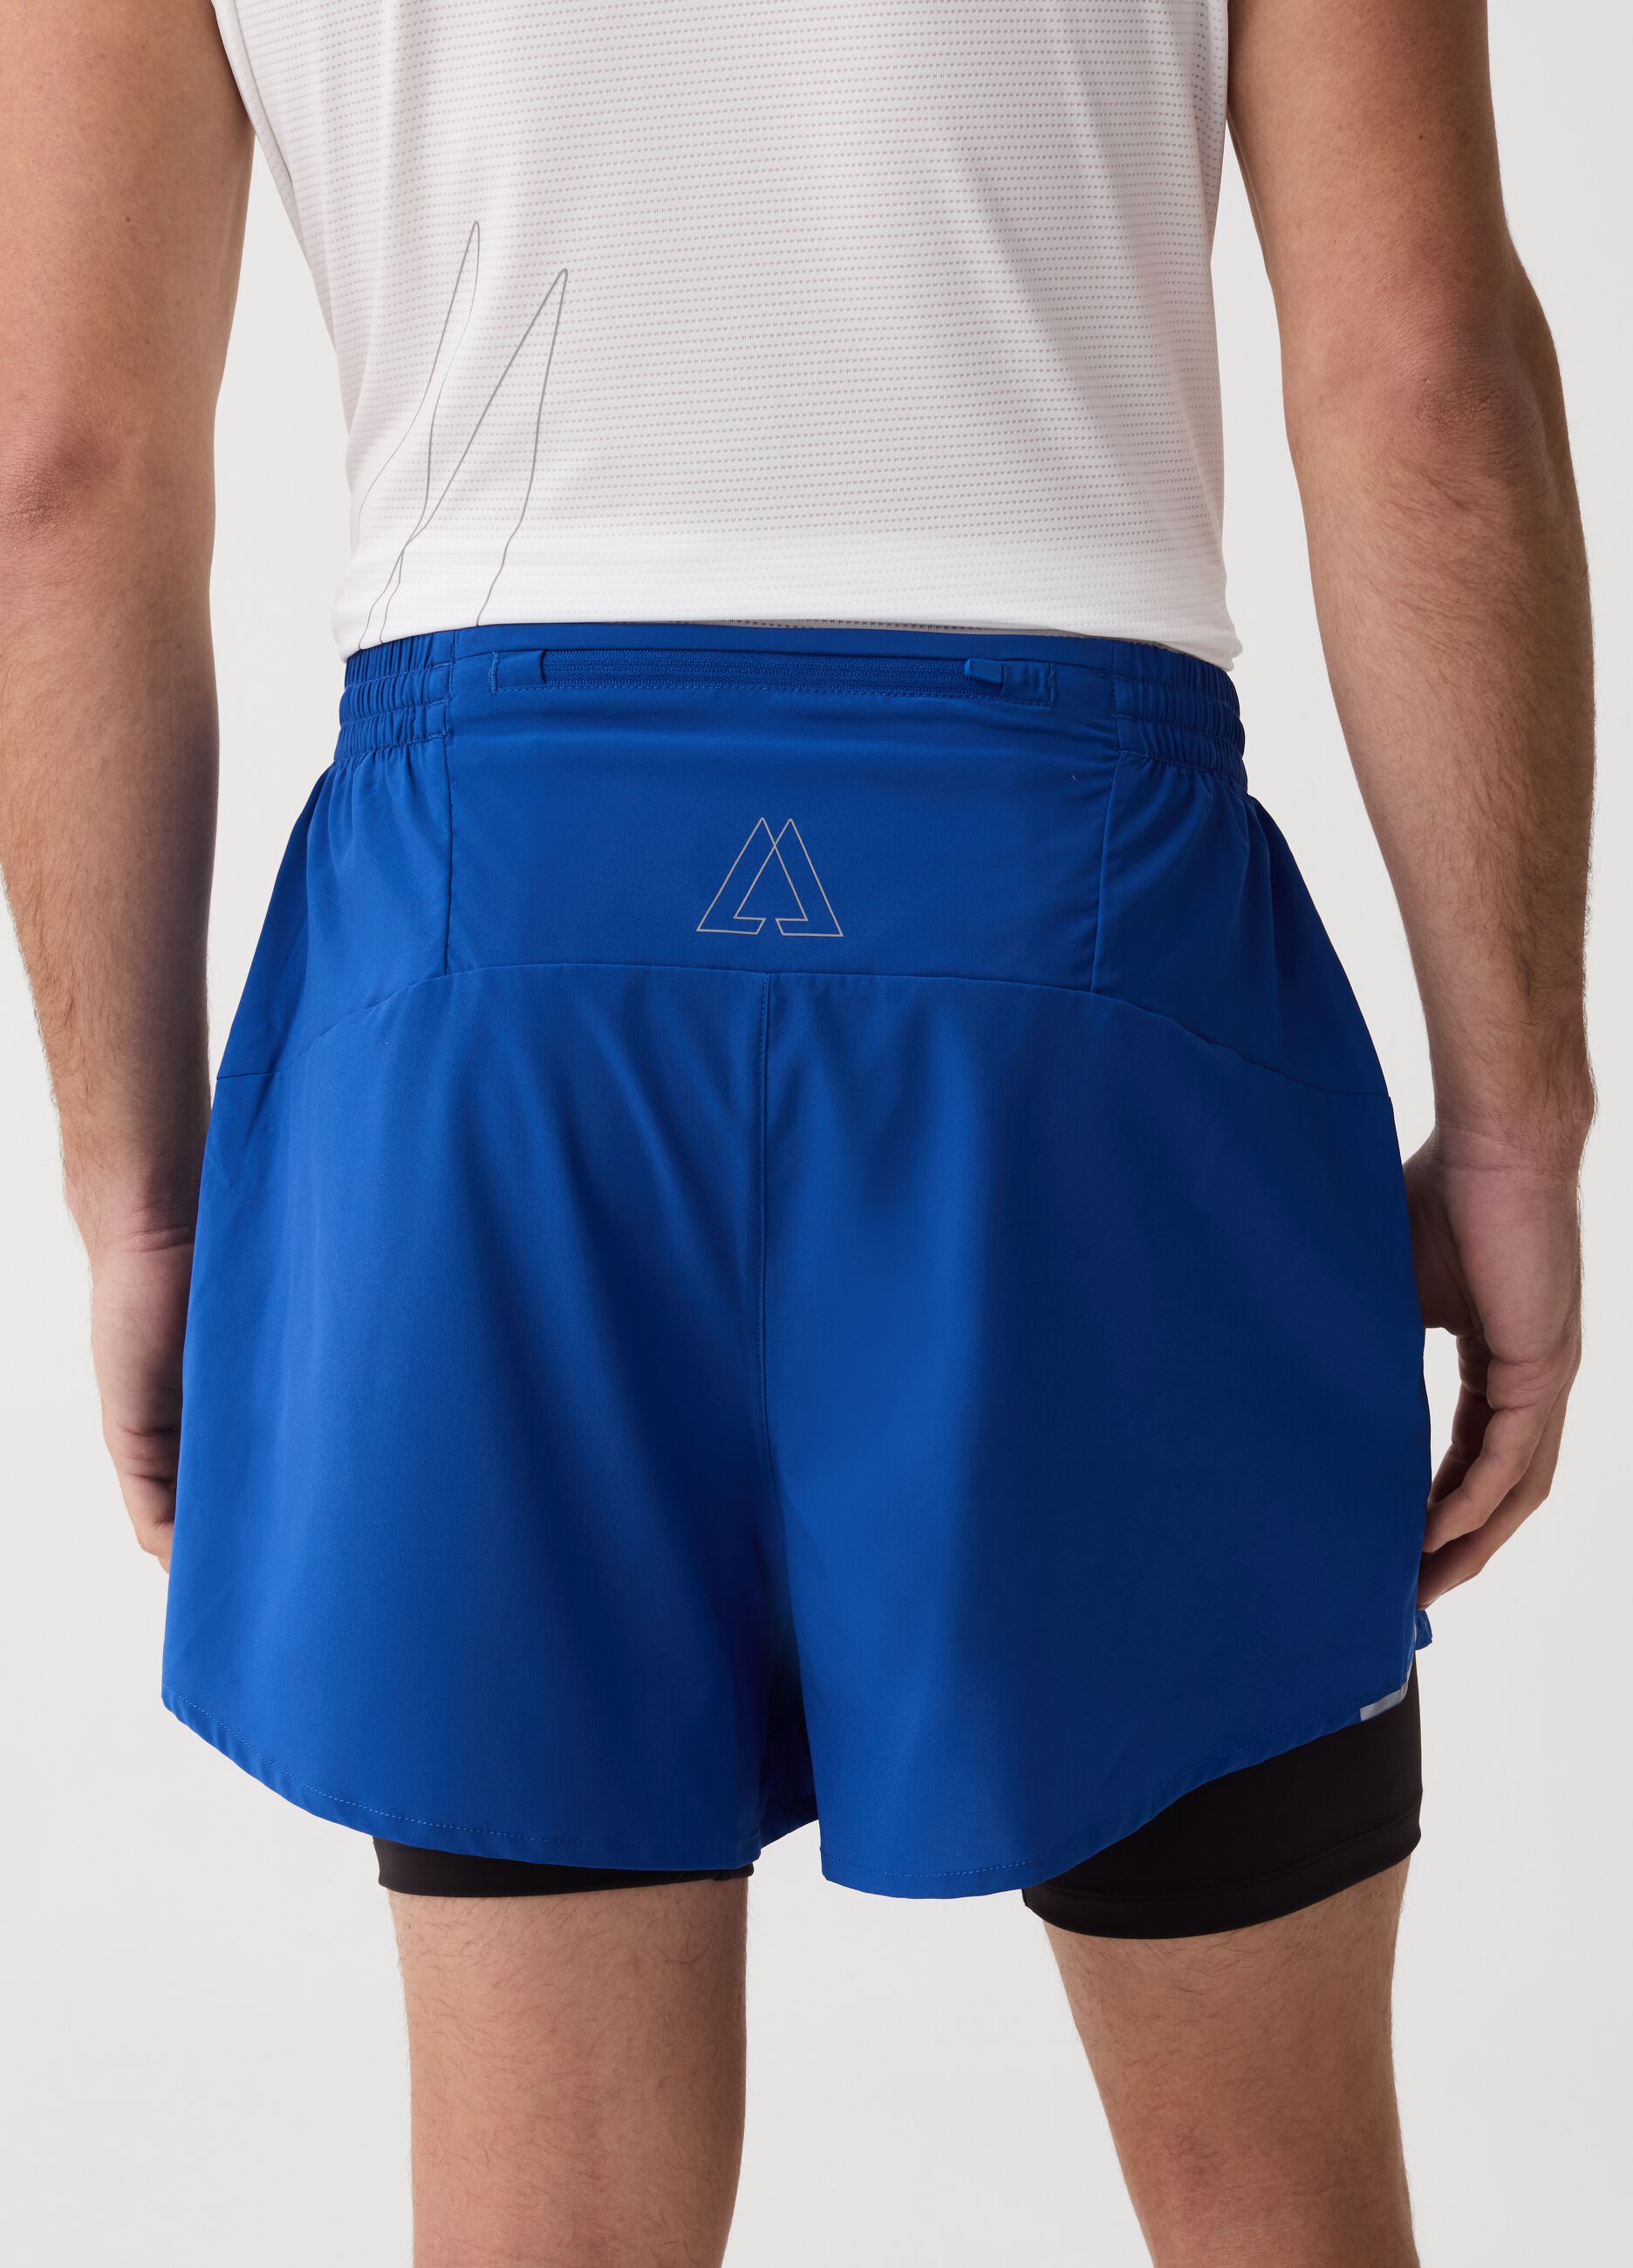 Altavia running shorts